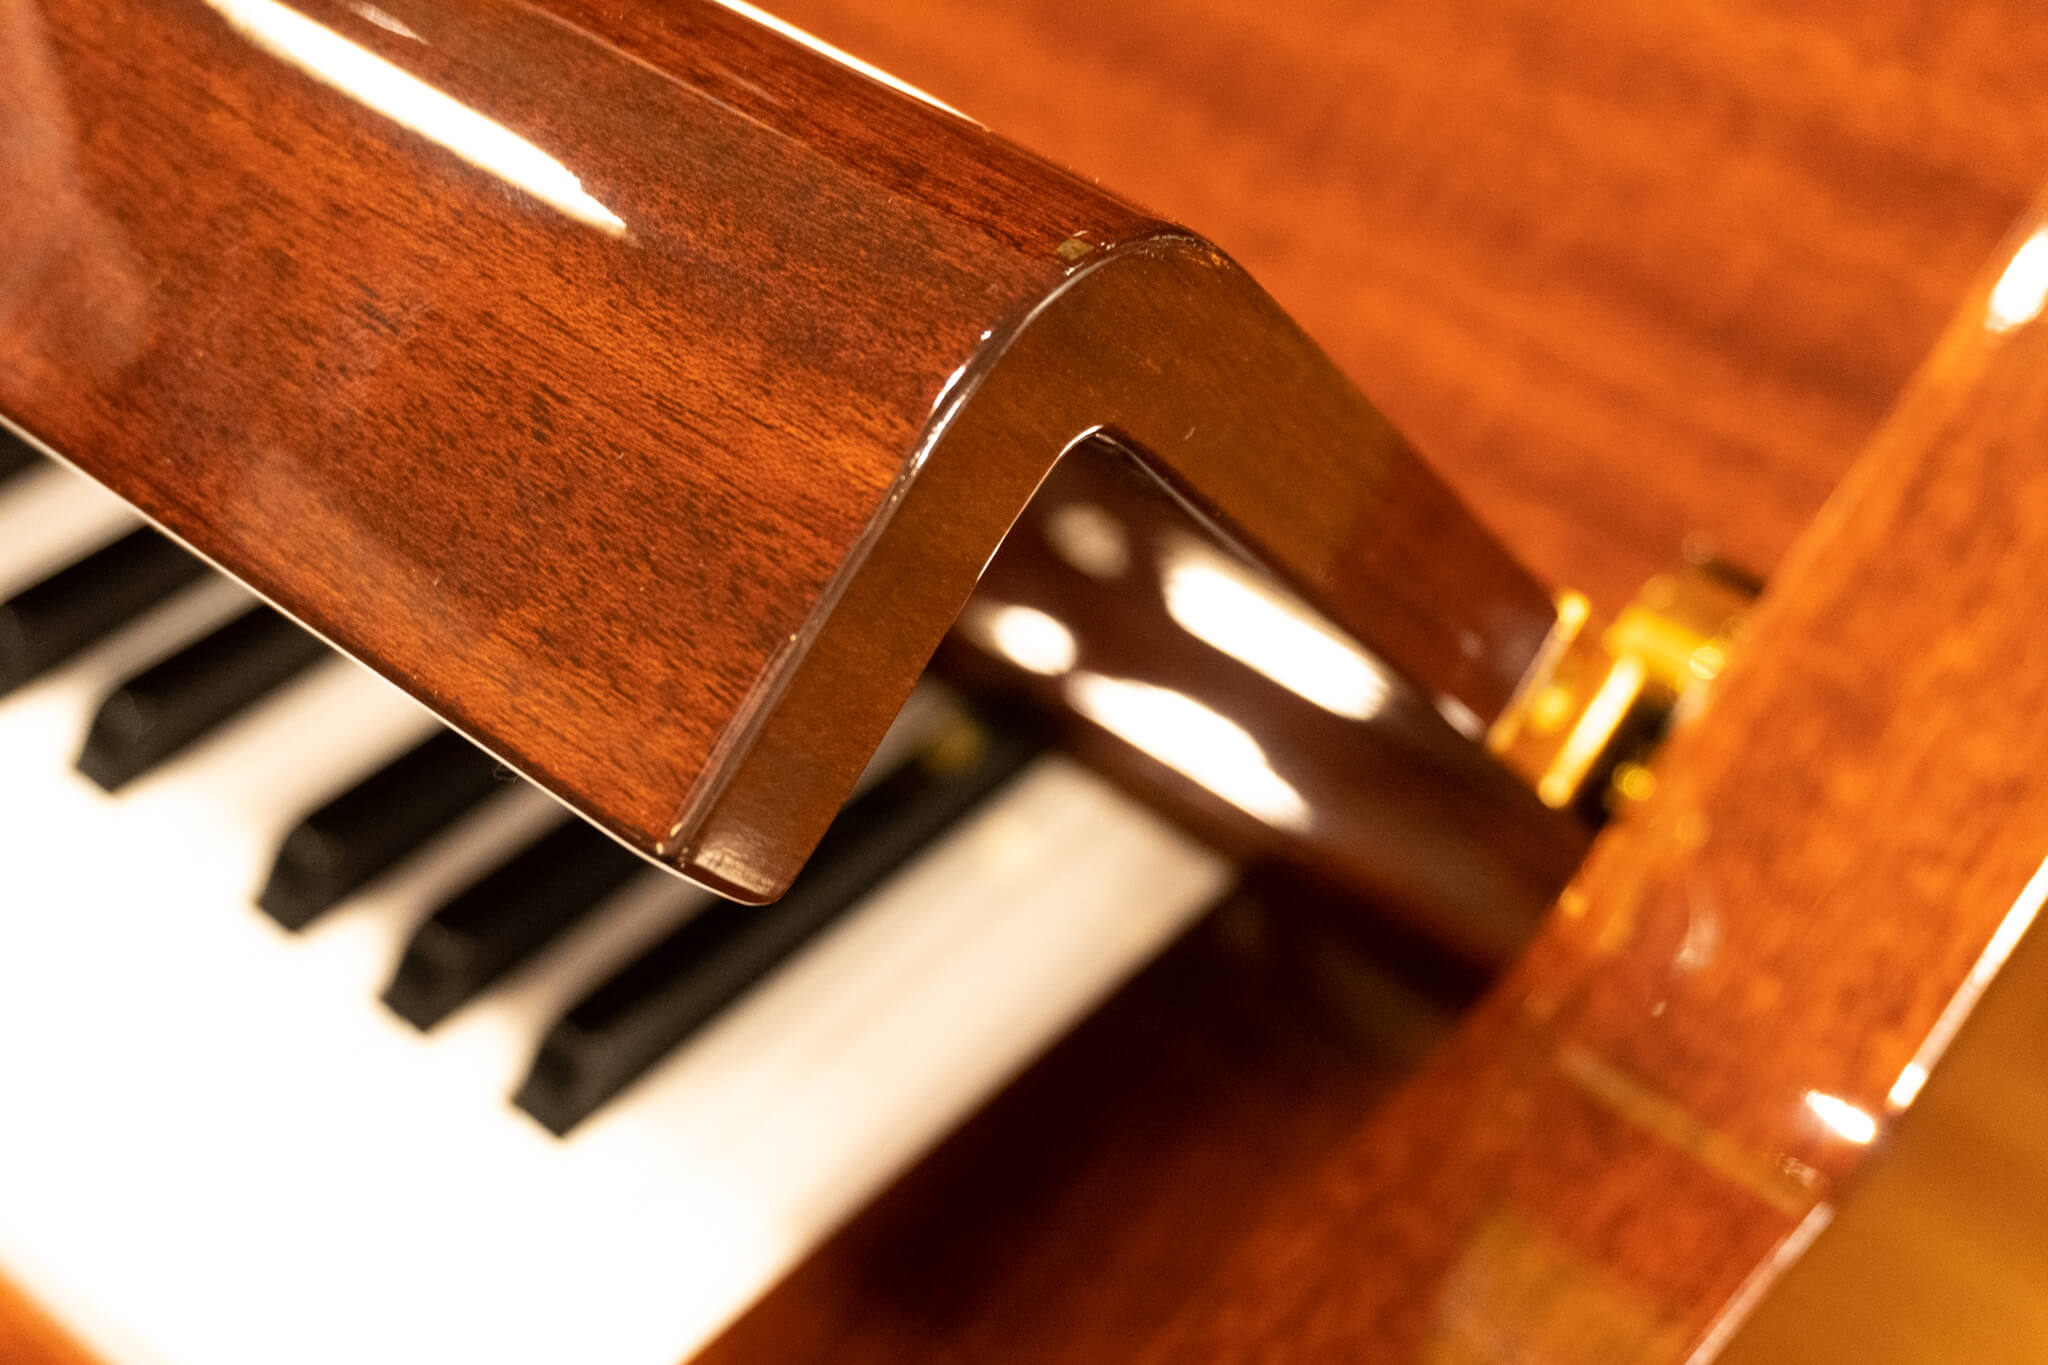 ヤマハ YU10MhC| 中古ピアノ 自社工房リフレッシュ済3年保証付 | 新響 